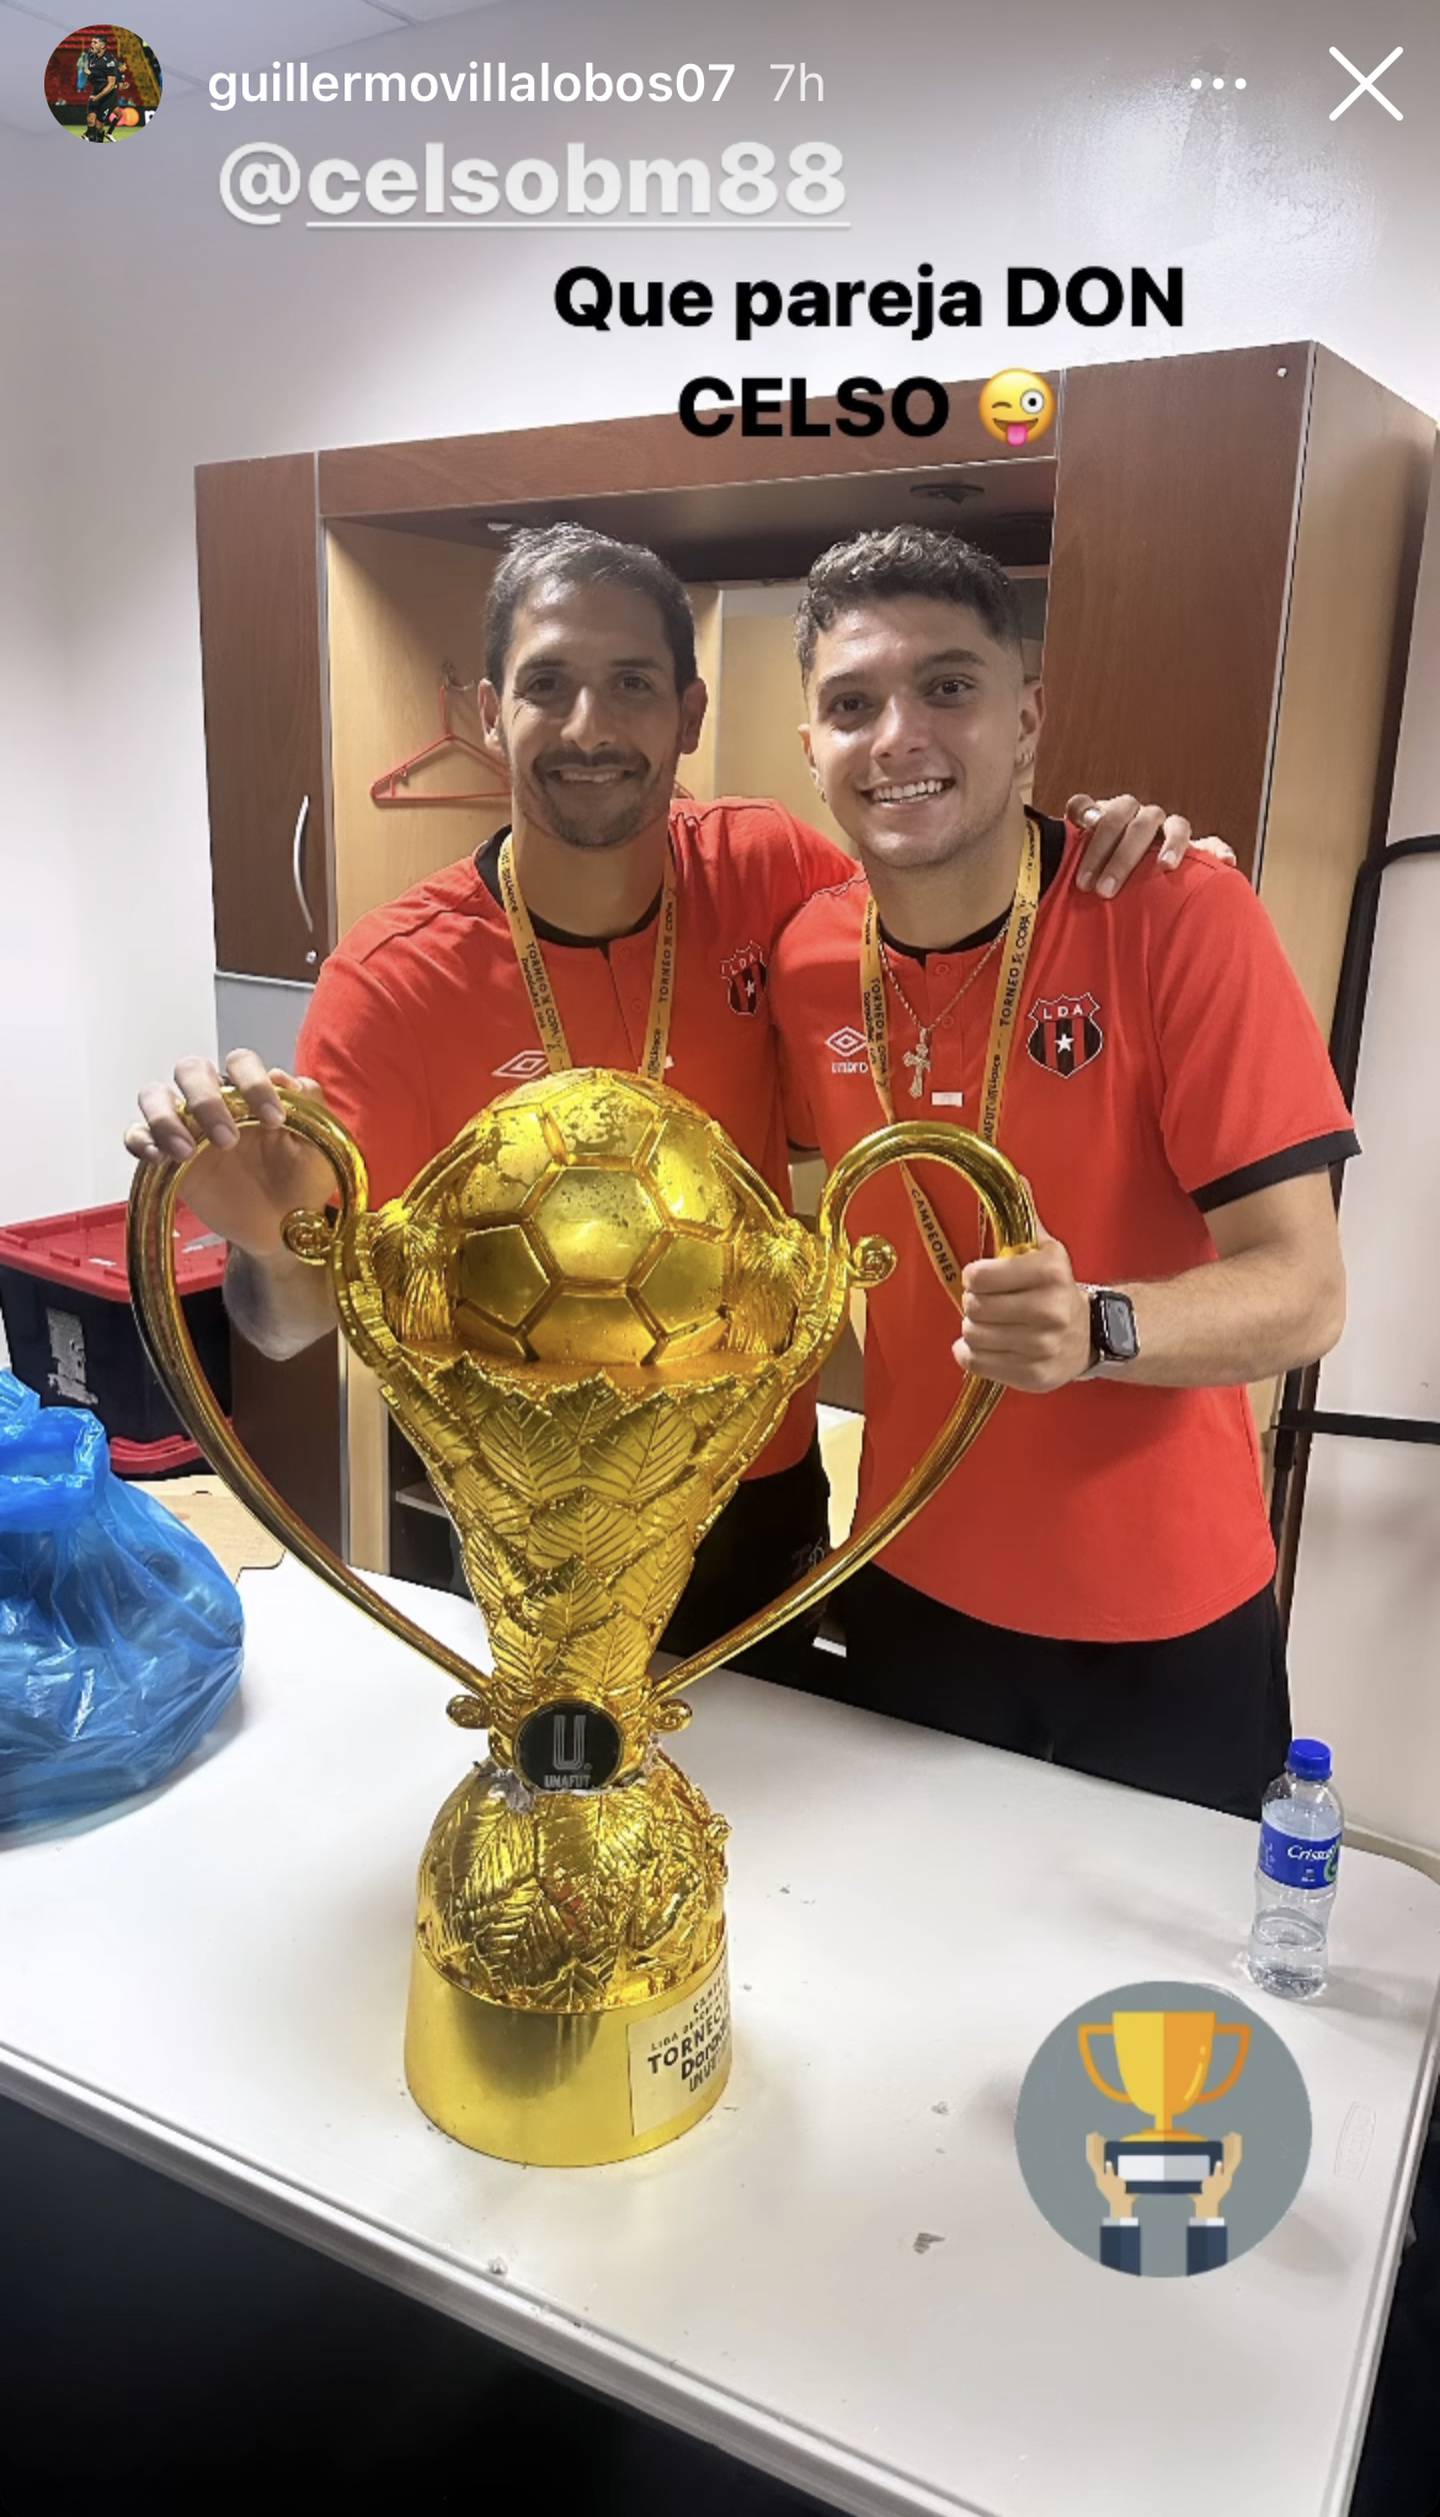 Celso Borges y Guillermo Villalobos fueron la pareja de defensores centrales en la final del Torneo de Copa entre Liga Deportiva Alajuelense y Saprissa. Fue el primer clásico de Villalobos.